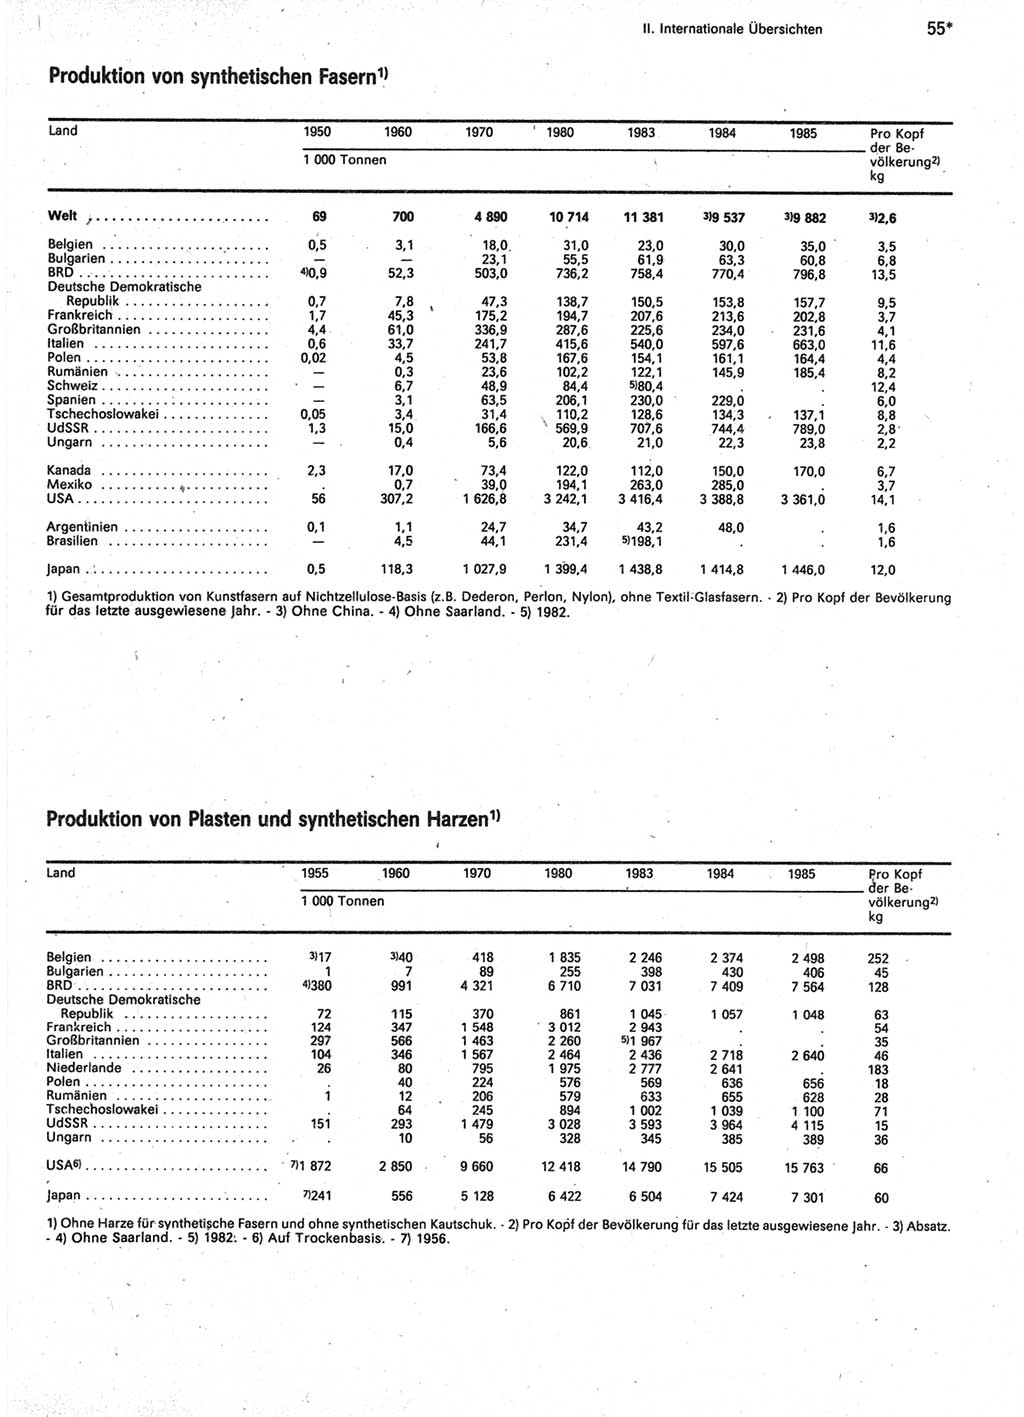 Statistisches Jahrbuch der Deutschen Demokratischen Republik (DDR) 1987, Seite 55 (Stat. Jb. DDR 1987, S. 55)